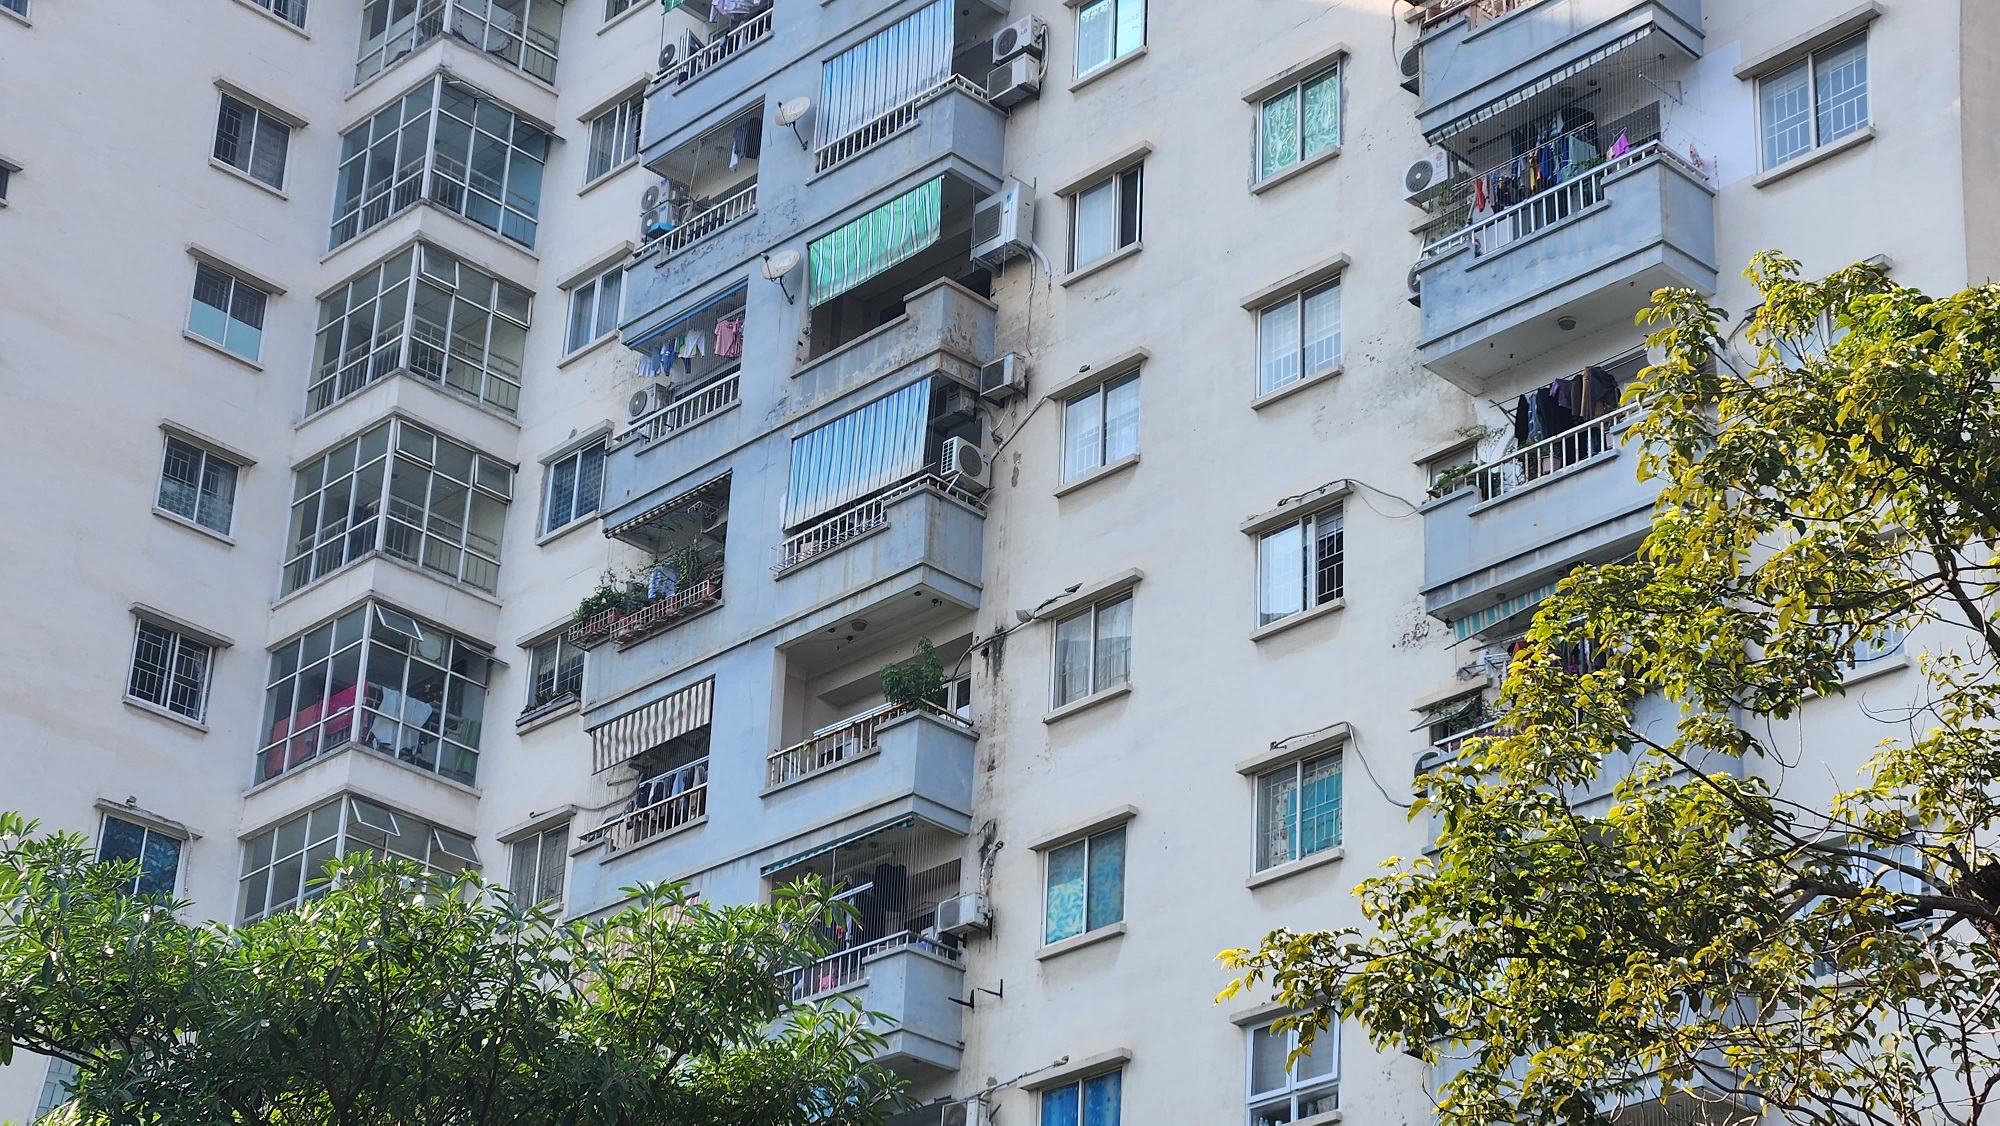 Cận cảnh chung cư nâng tầng chưa được chấp thuận khiến cư dân 15 năm không được cấp sổ hồng - Ảnh 3.